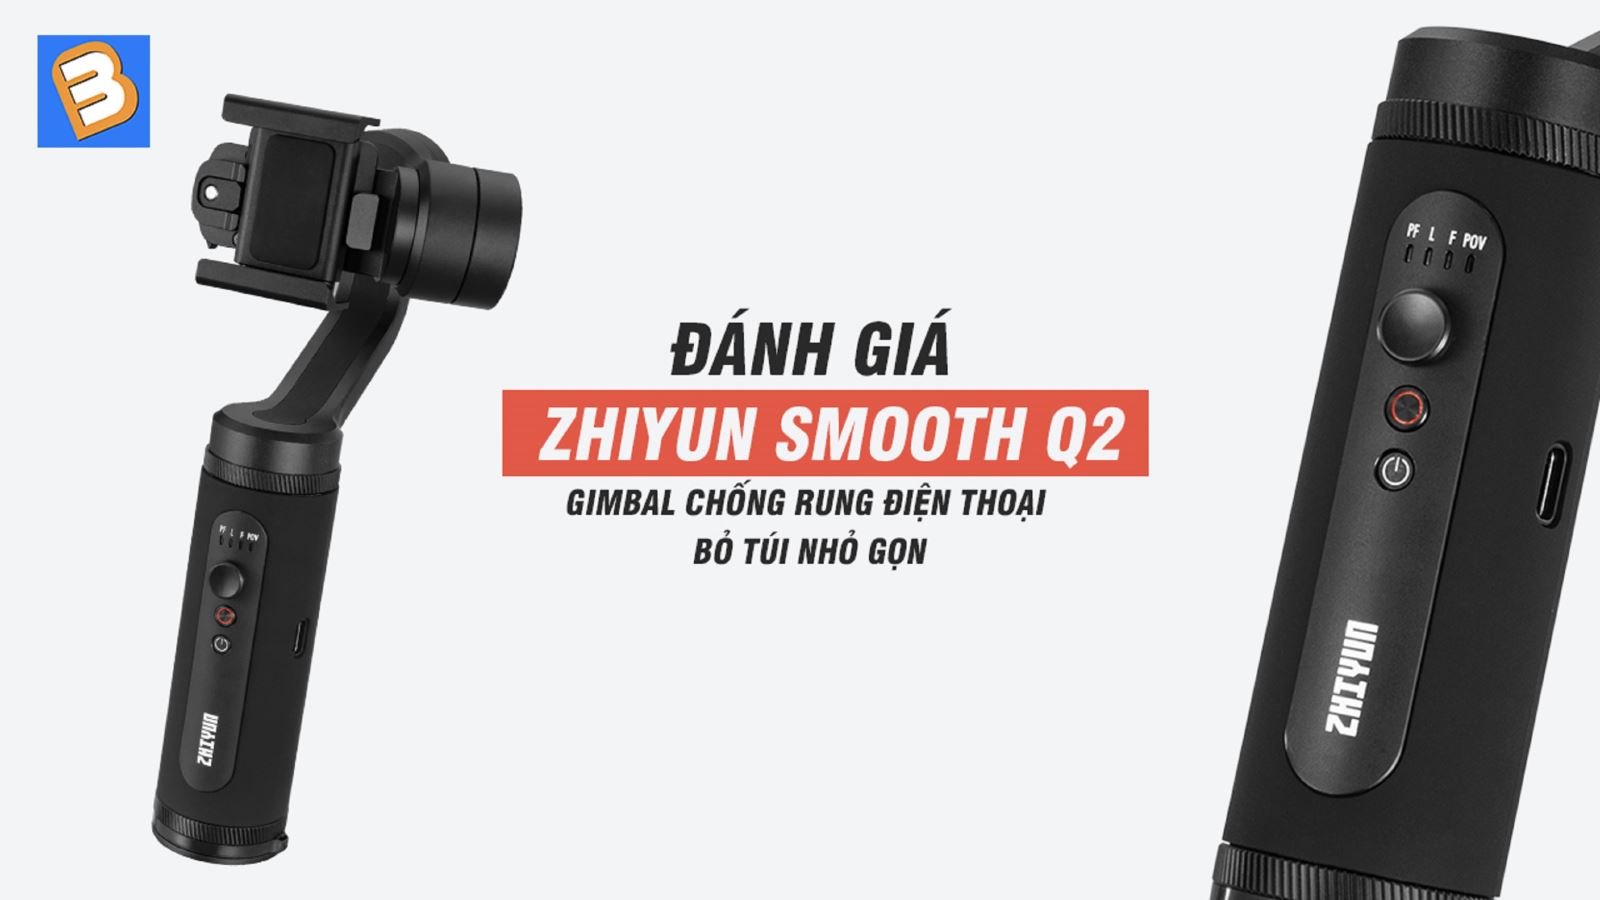 Đánh giá Zhiyun Smooth Q2: Gimbal chống rung điện thoại bỏ túi nhỏ gọn